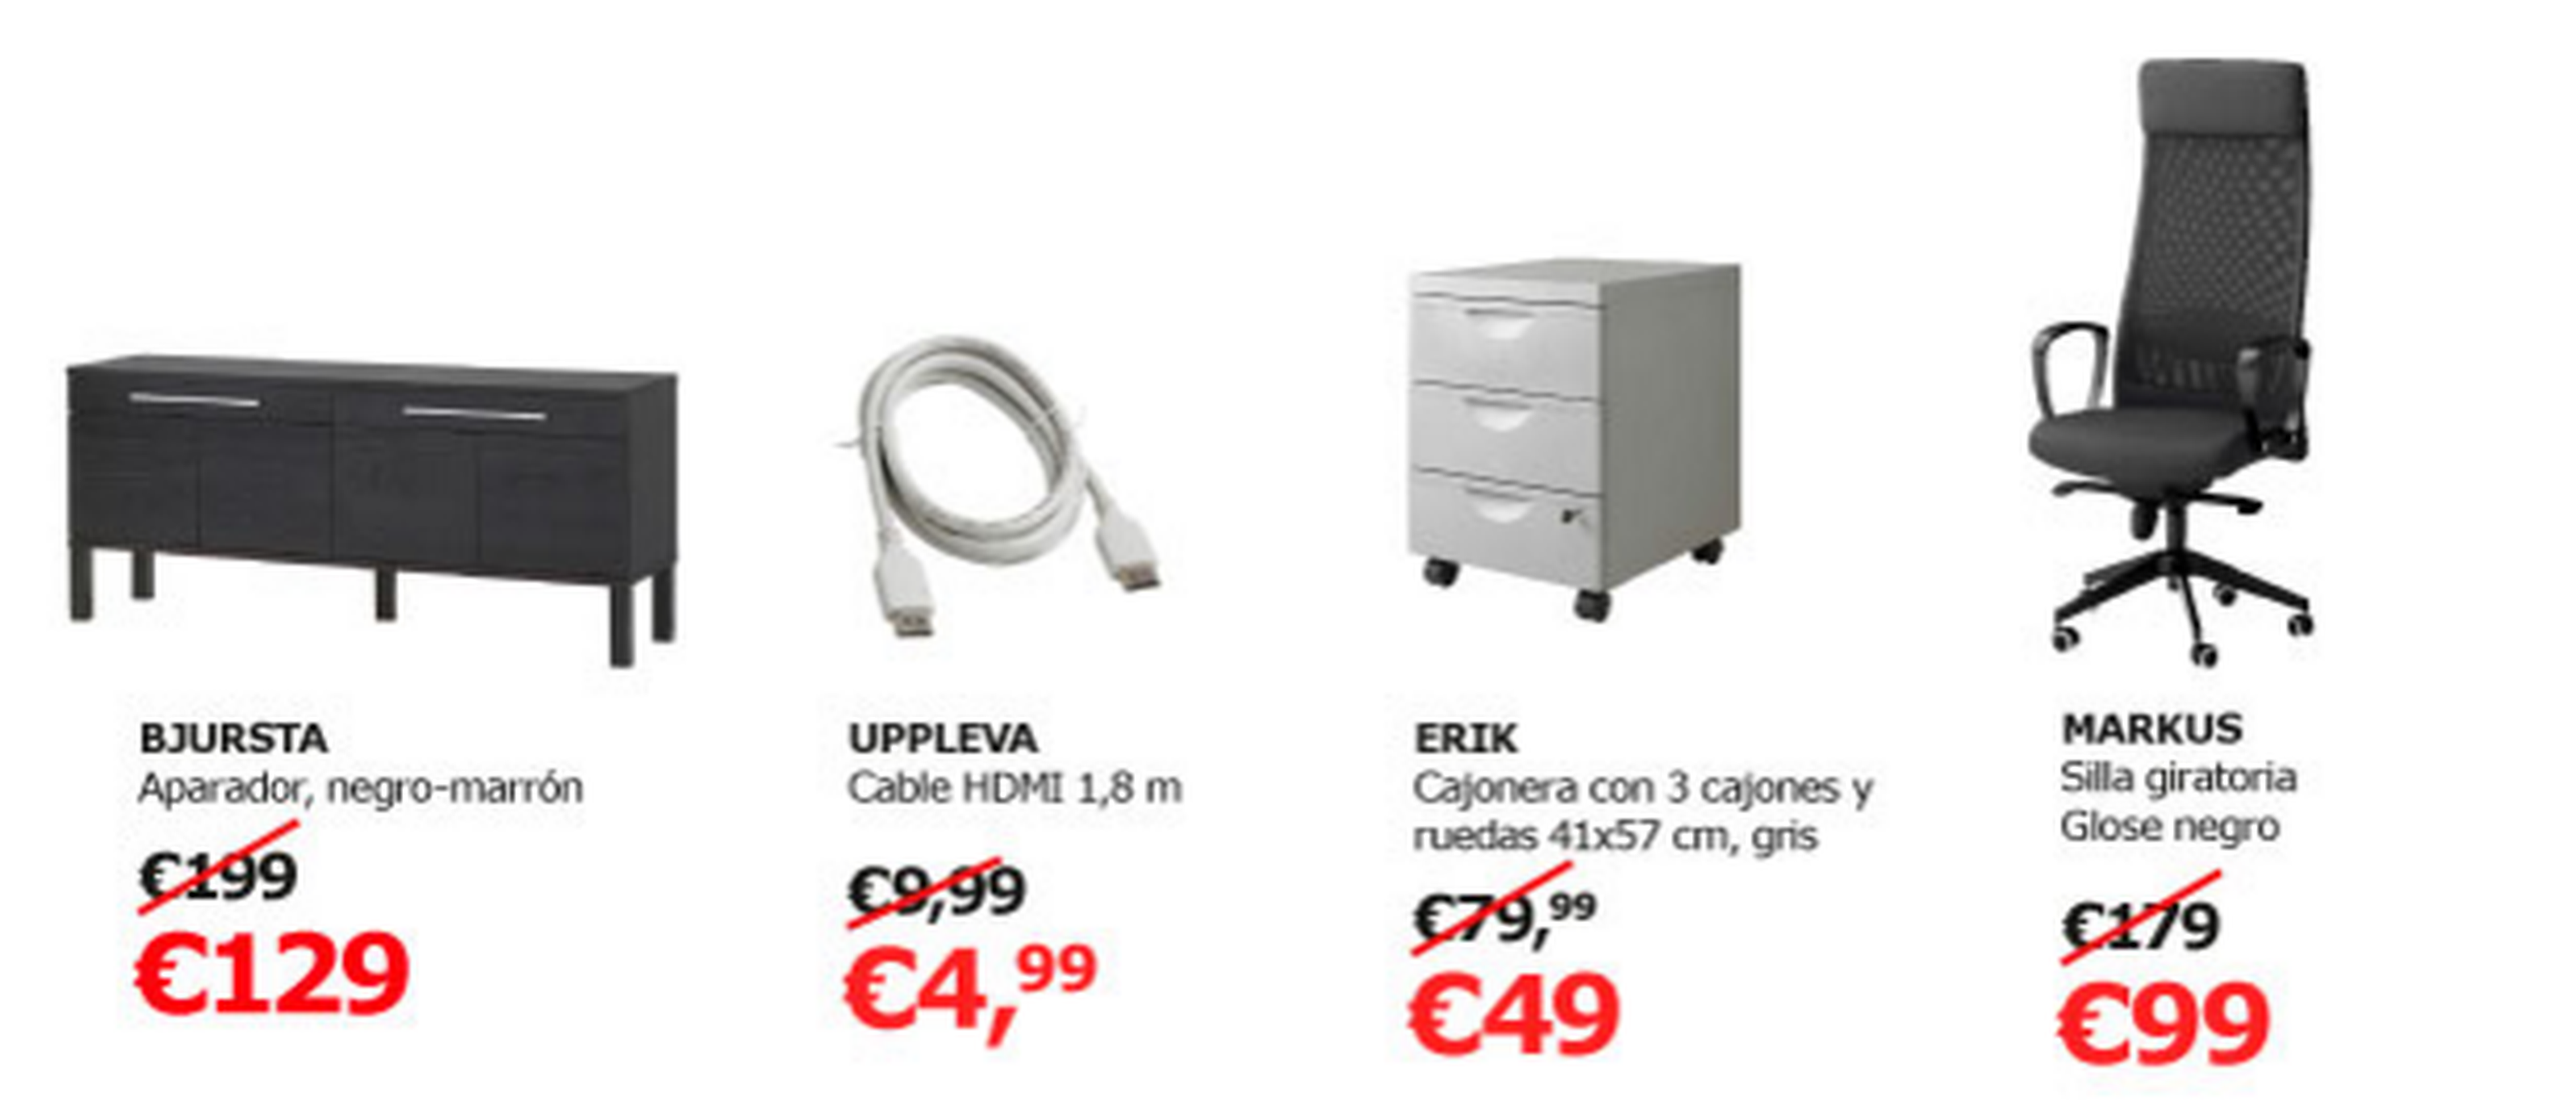 Black Friday 2015 en Ikea: las mejores ofertas en muebles